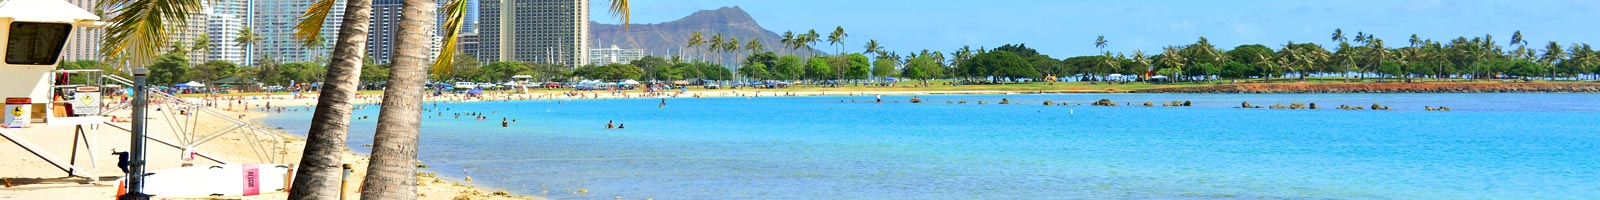 ハワイ観光ガイド